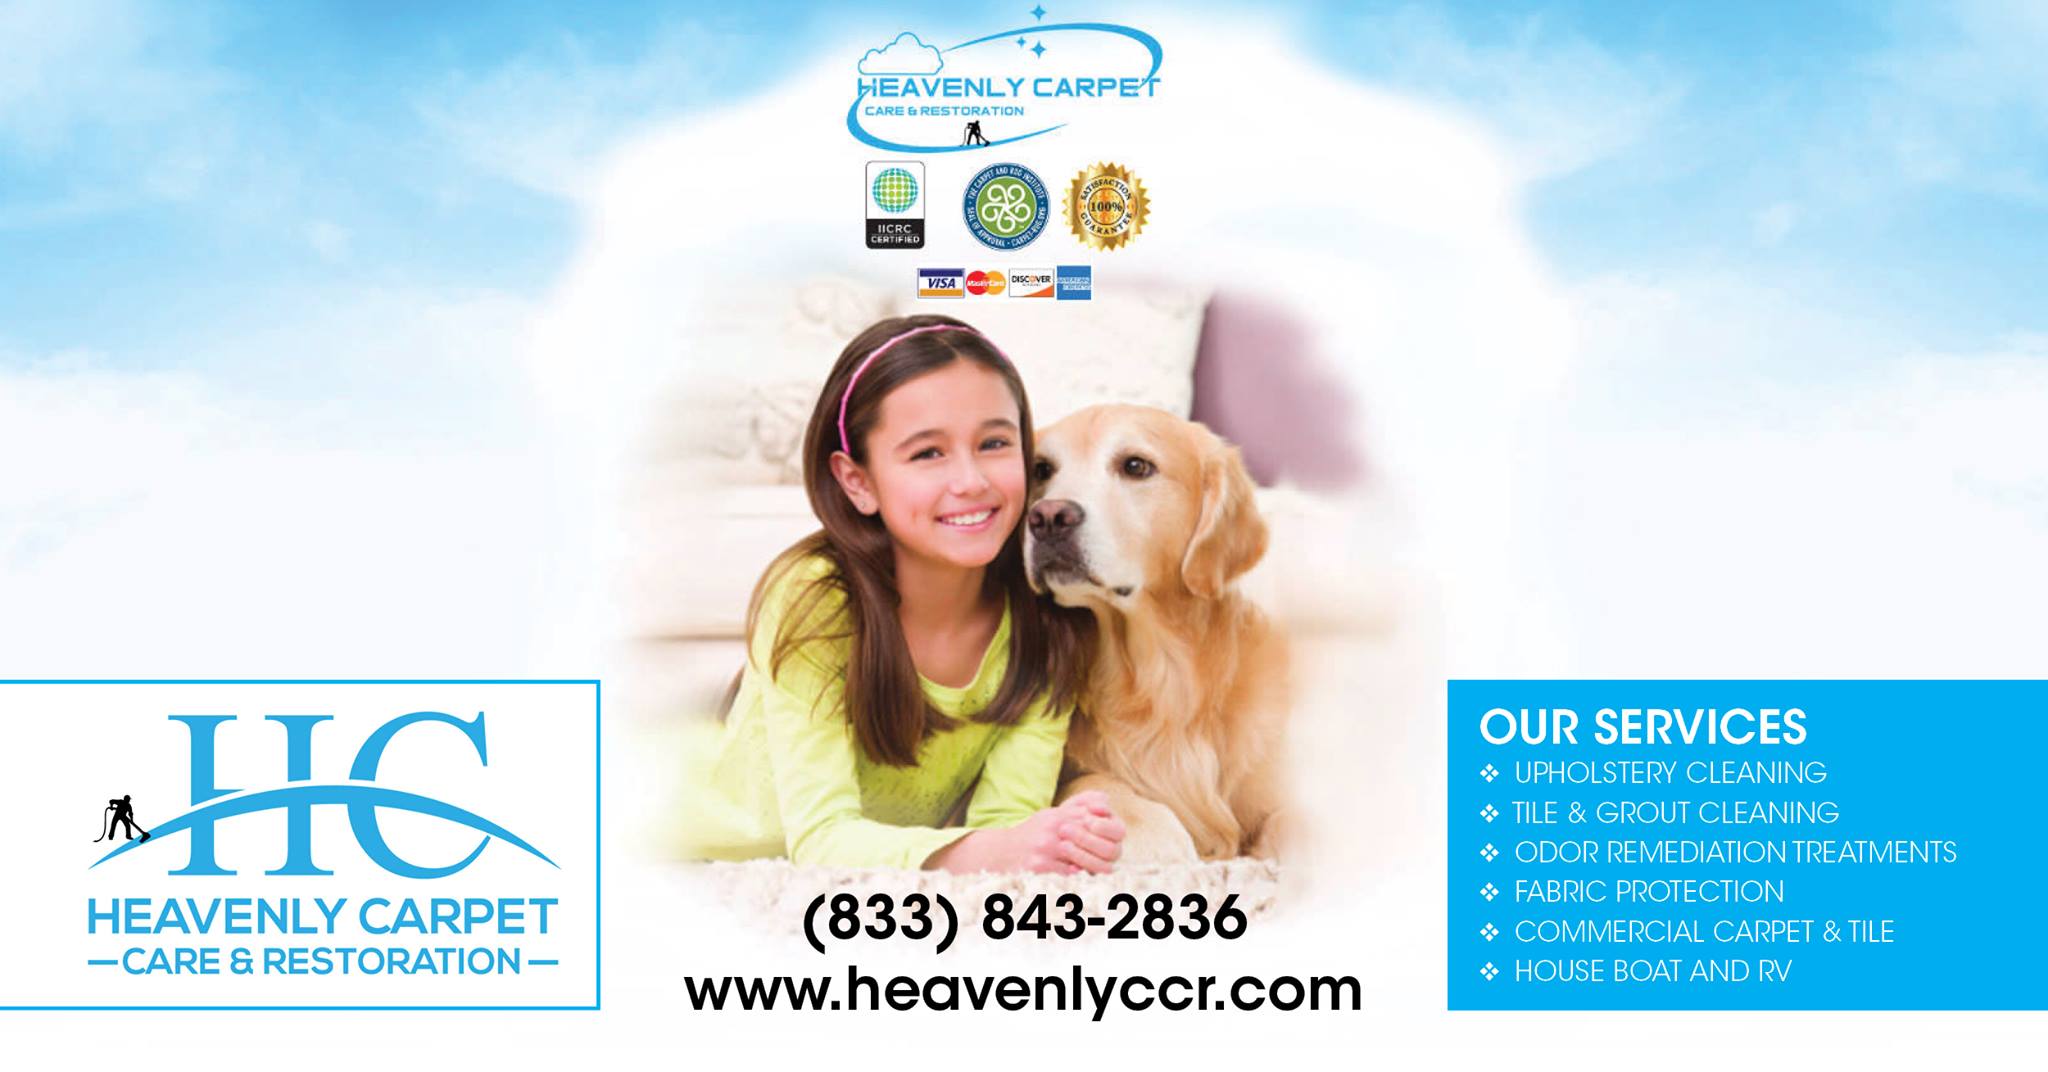 Heavenly Carpet Care & Restoration, LLC 6466 Rte 908, Tarentum Pennsylvania 15084